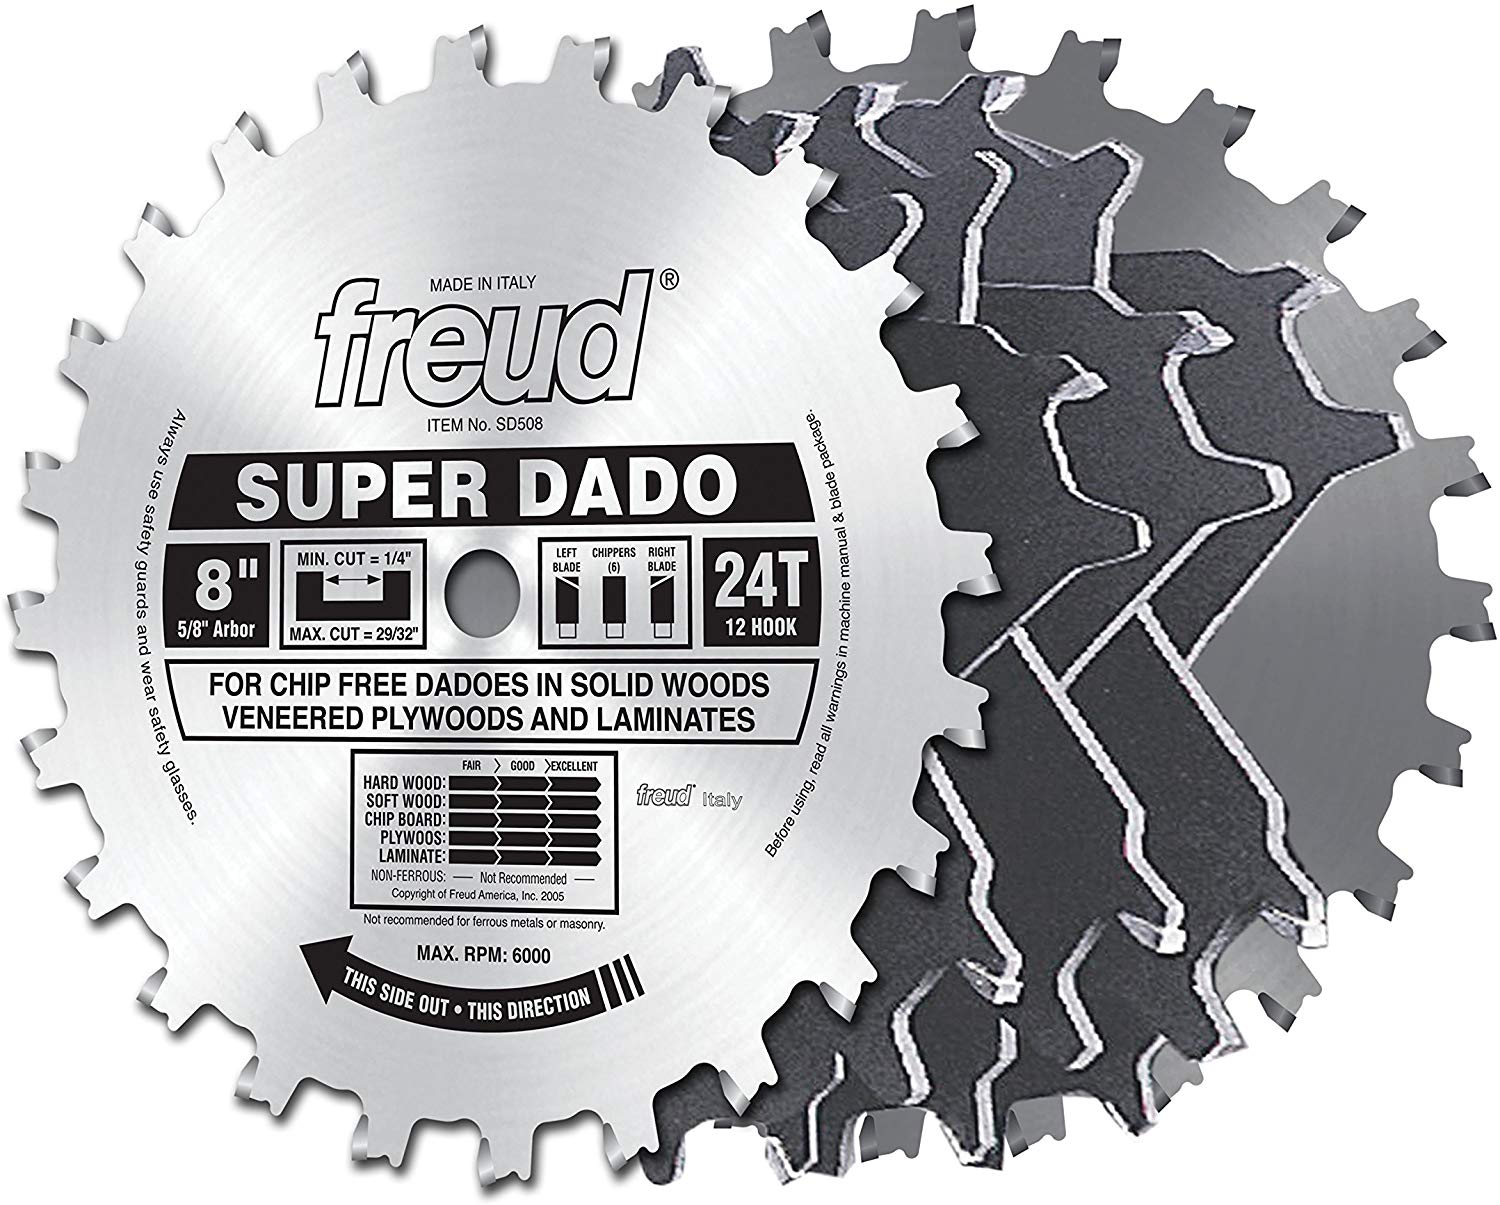 Freud SD508